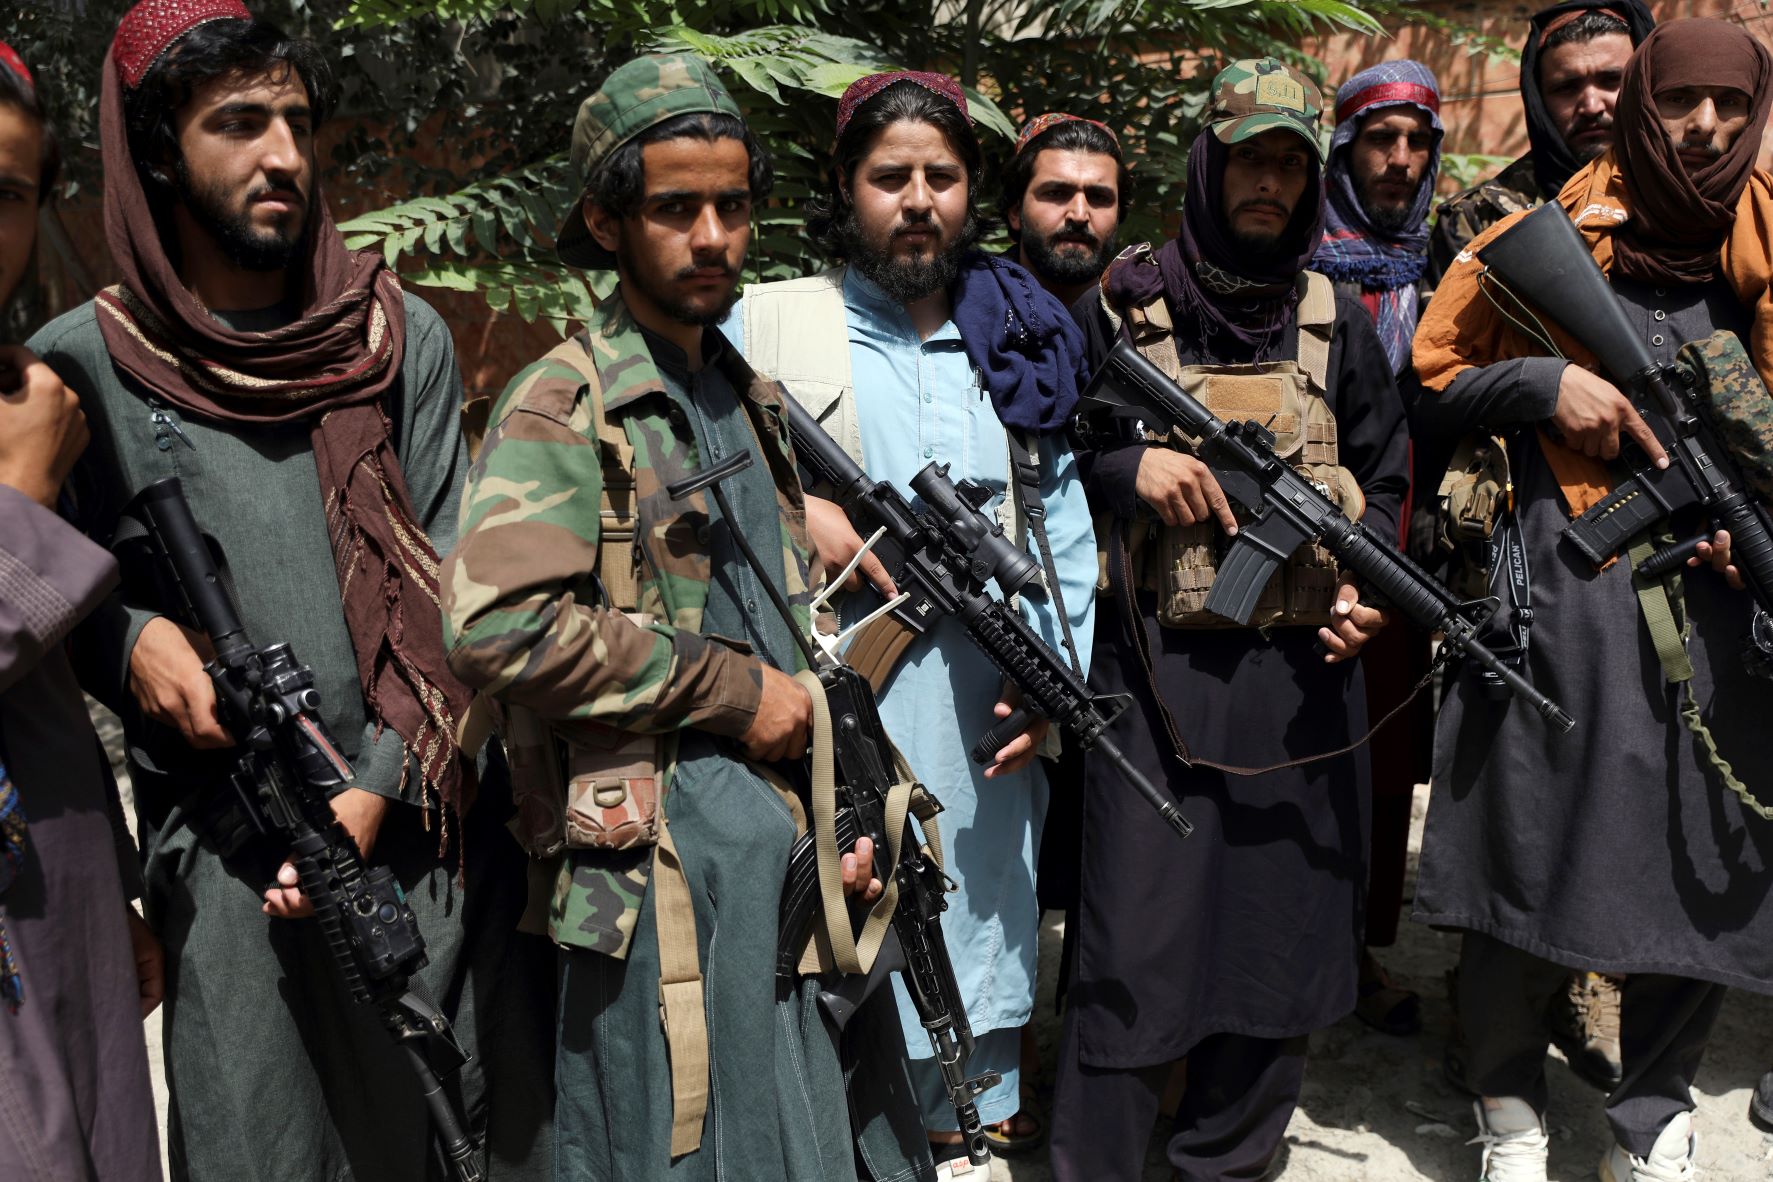 20210819-image-mb-dpa-Taliban-Kämpfer